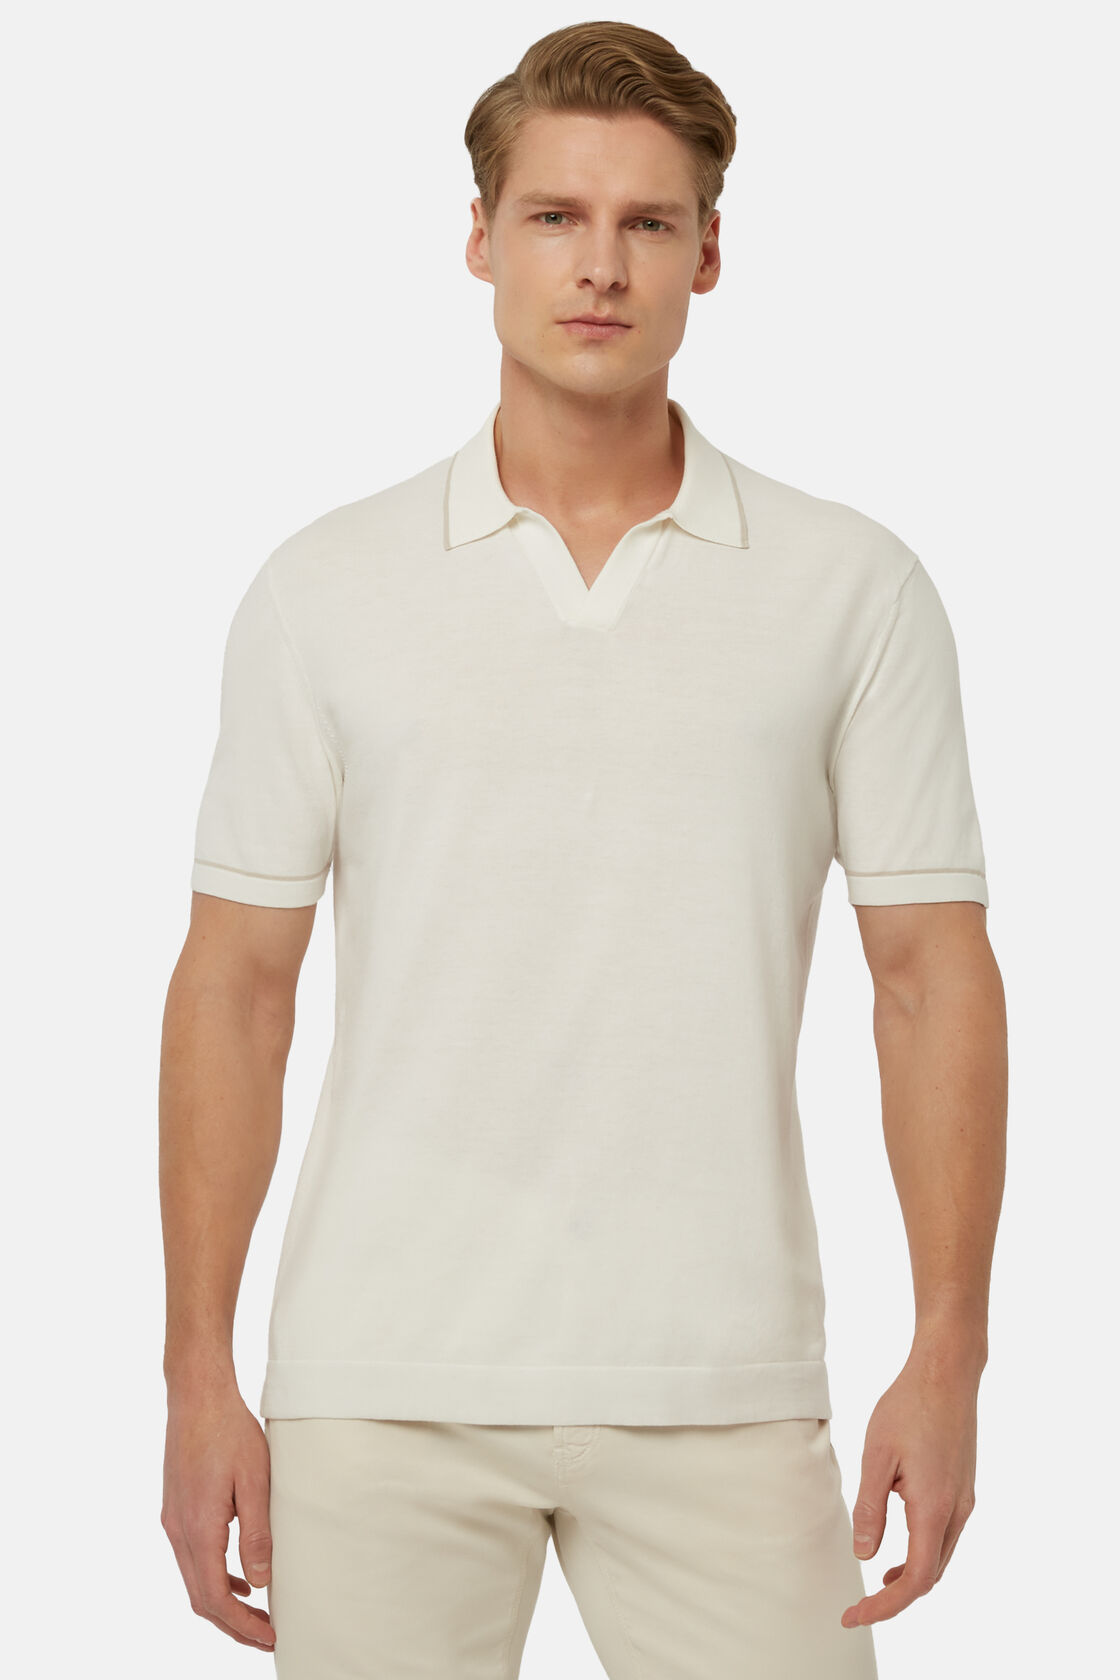 Weißes Strick-Poloshirt Aus Baumwollkrepp, Weiß, hi-res